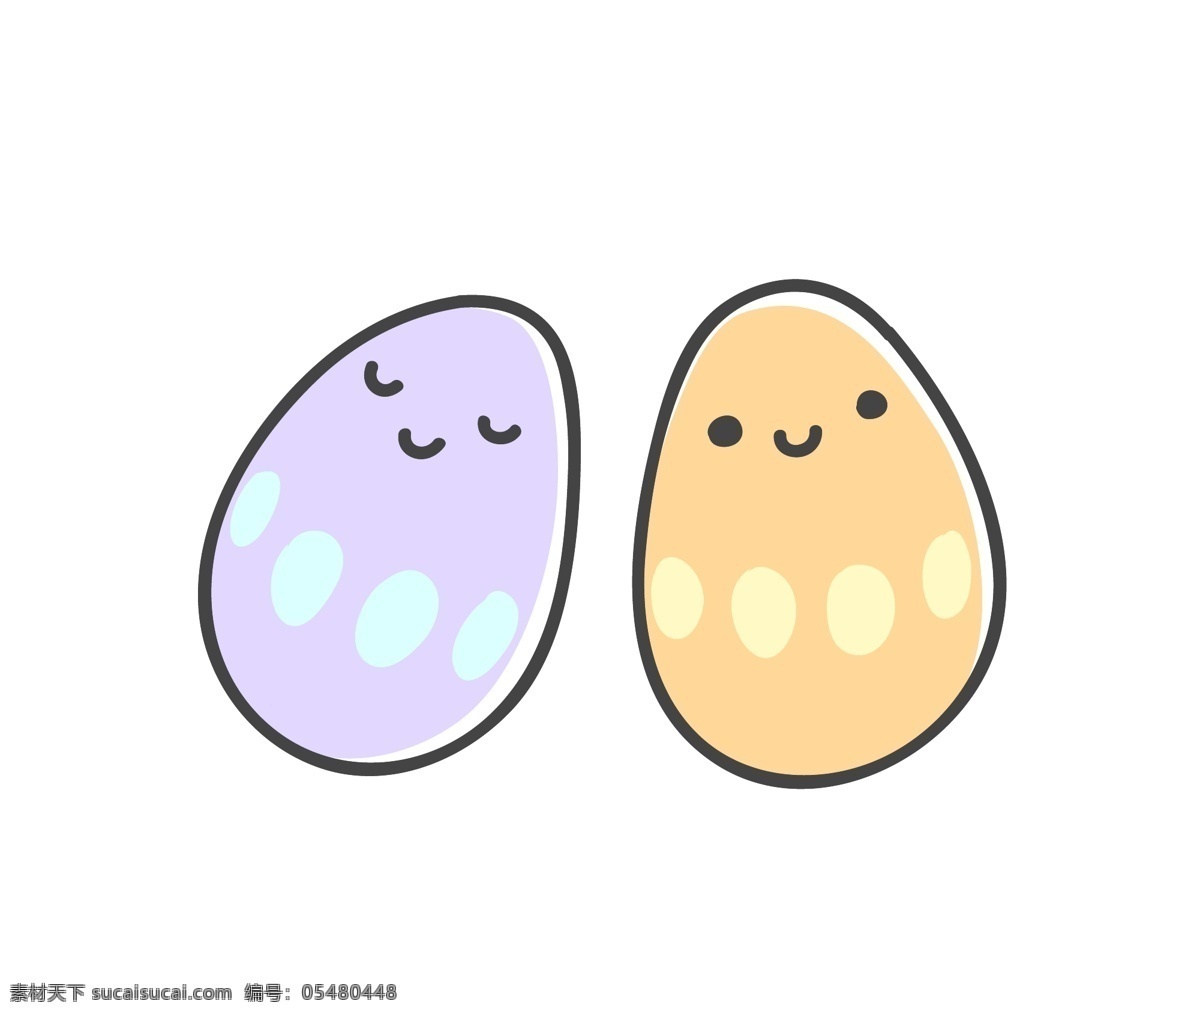 手绘 两个 卡通 鸡蛋 矢量 粉紫色 花纹 黄色 可爱 平面素材 设计素材 矢量素材